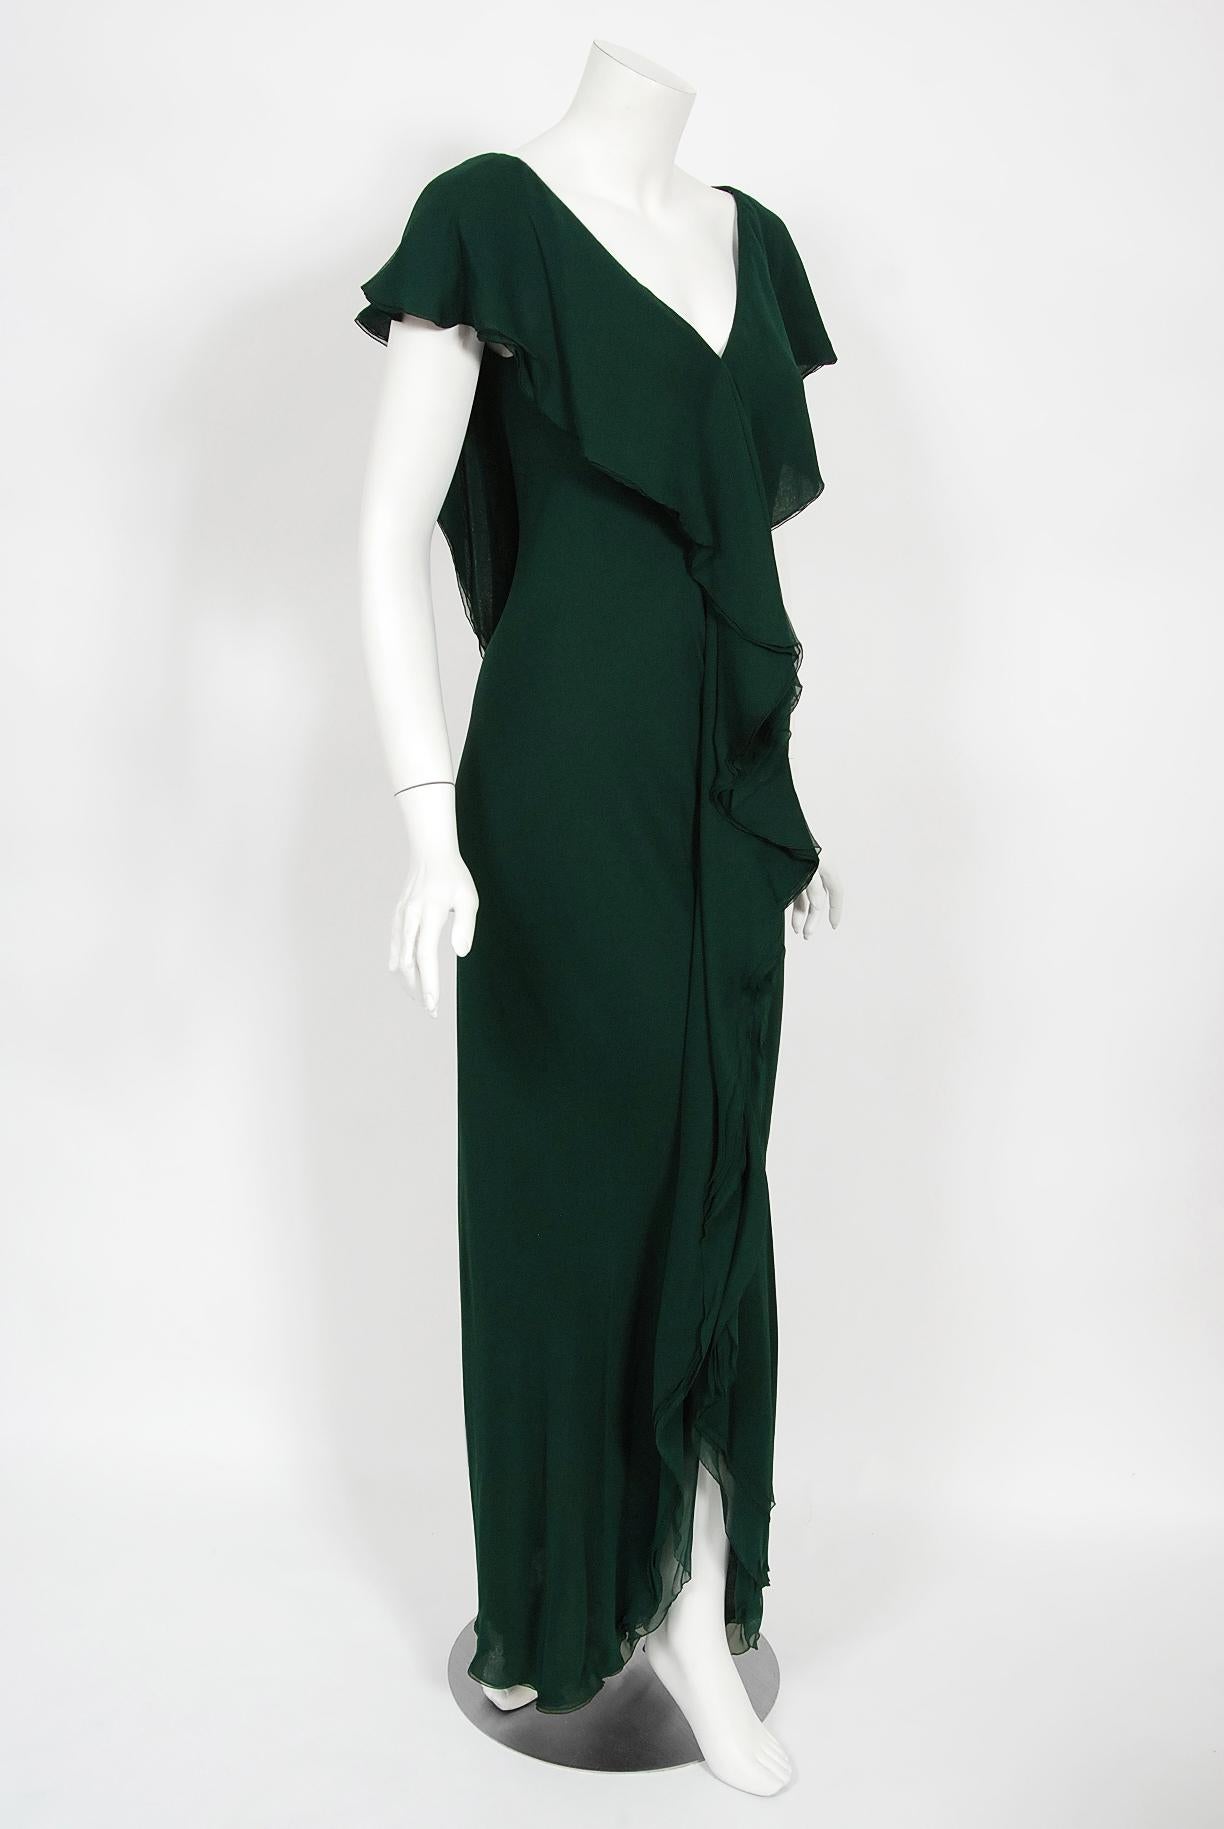 halston green gown